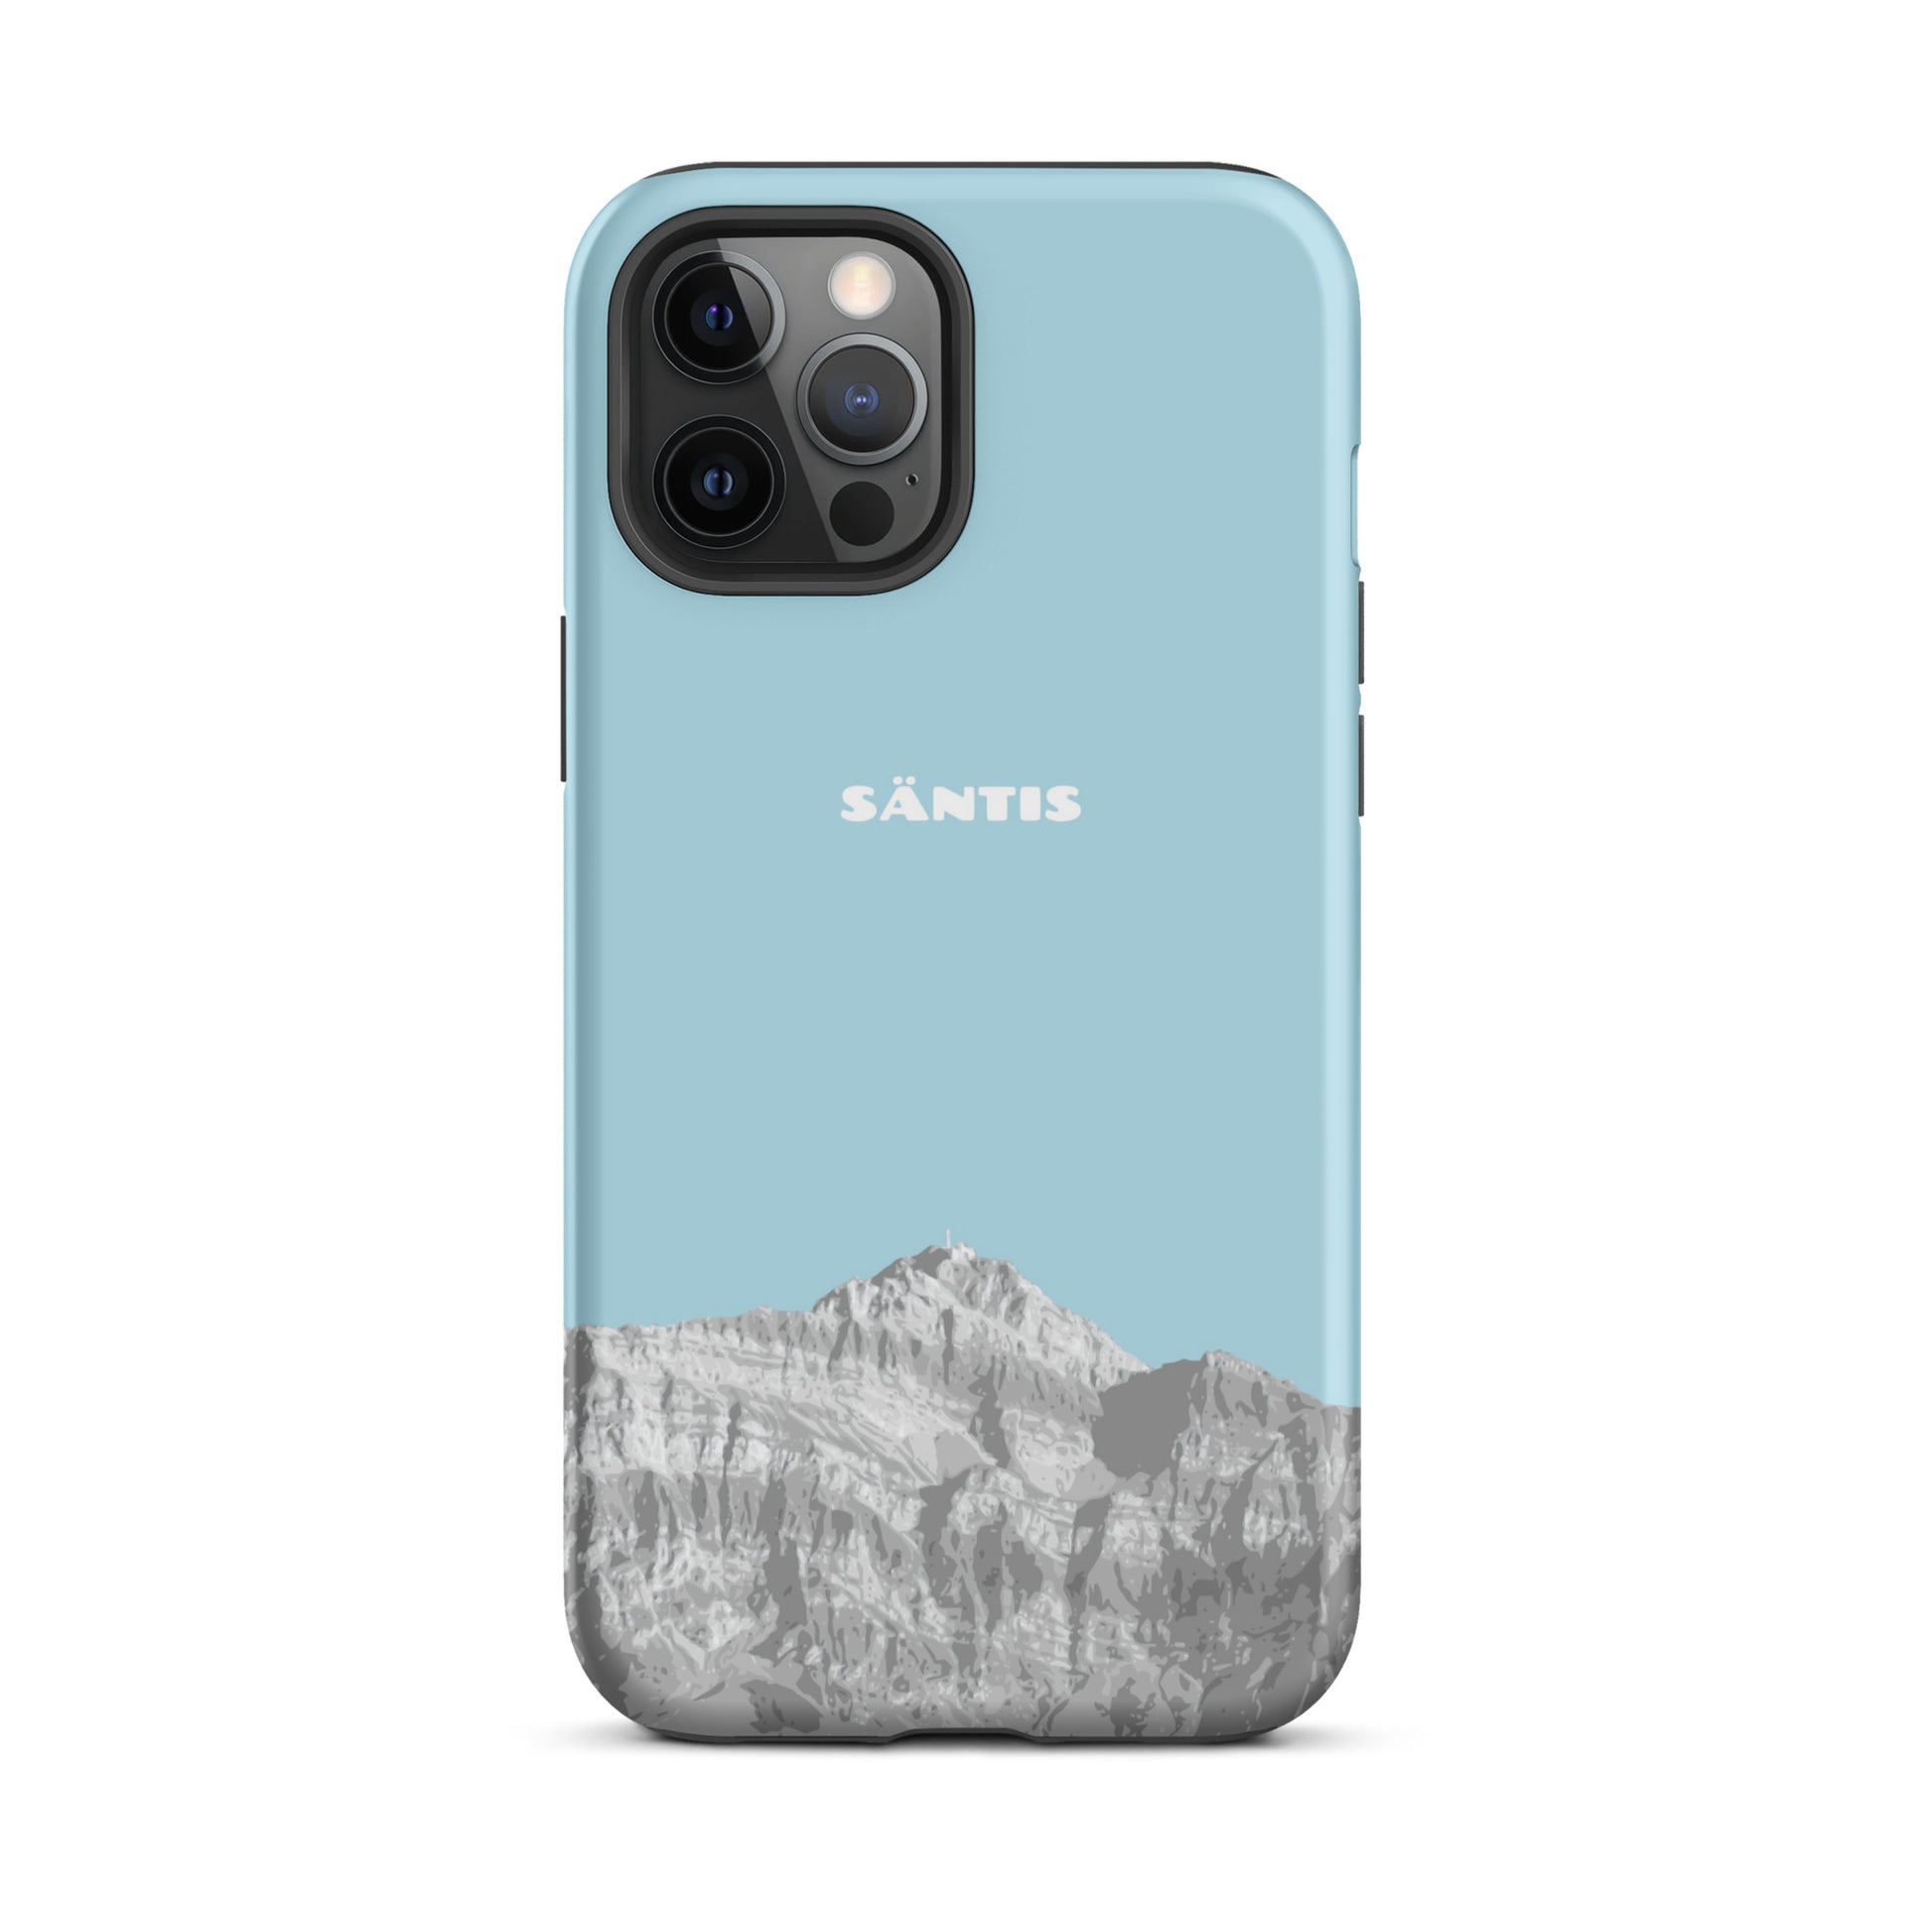 Hülle für das iPhone 12 Pro Max von Apple in der Farbe Hellblau, dass den Säntis im Alpstein zeigt.